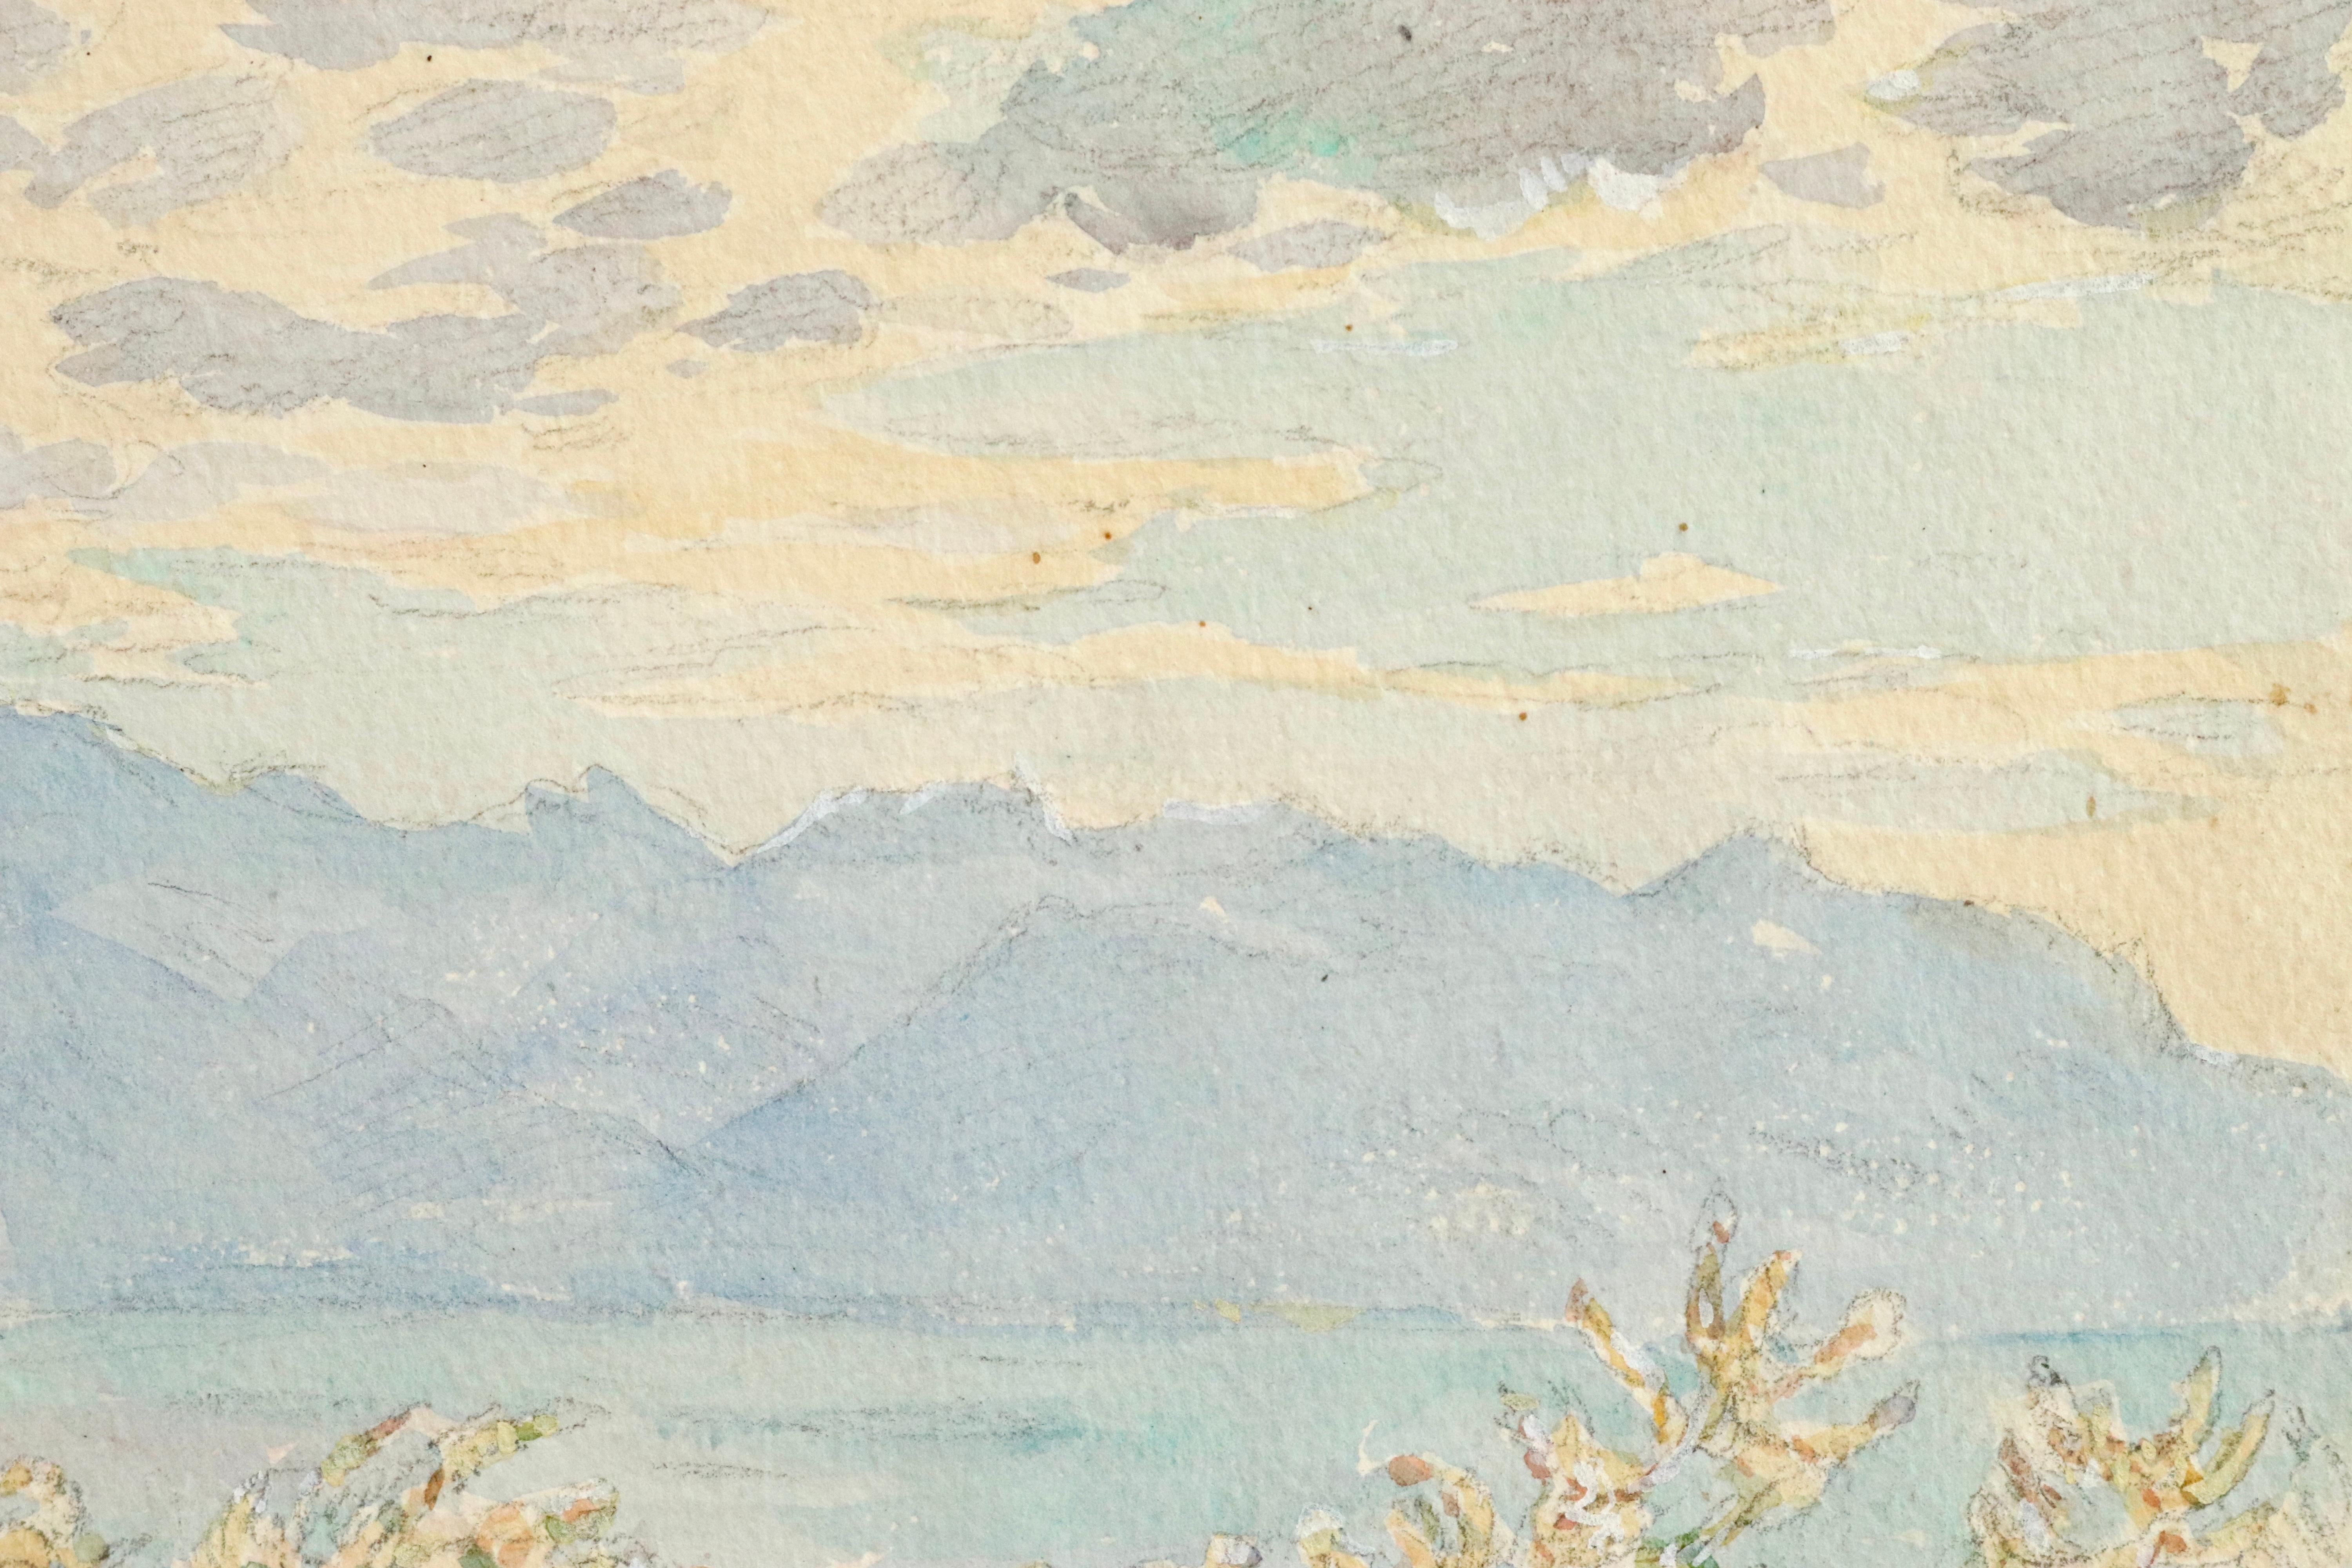 La Vue - La Genf - Impressionistisches Aquarell, Berg- und Seelandschaft H Duhem – Art von Henri Duhem